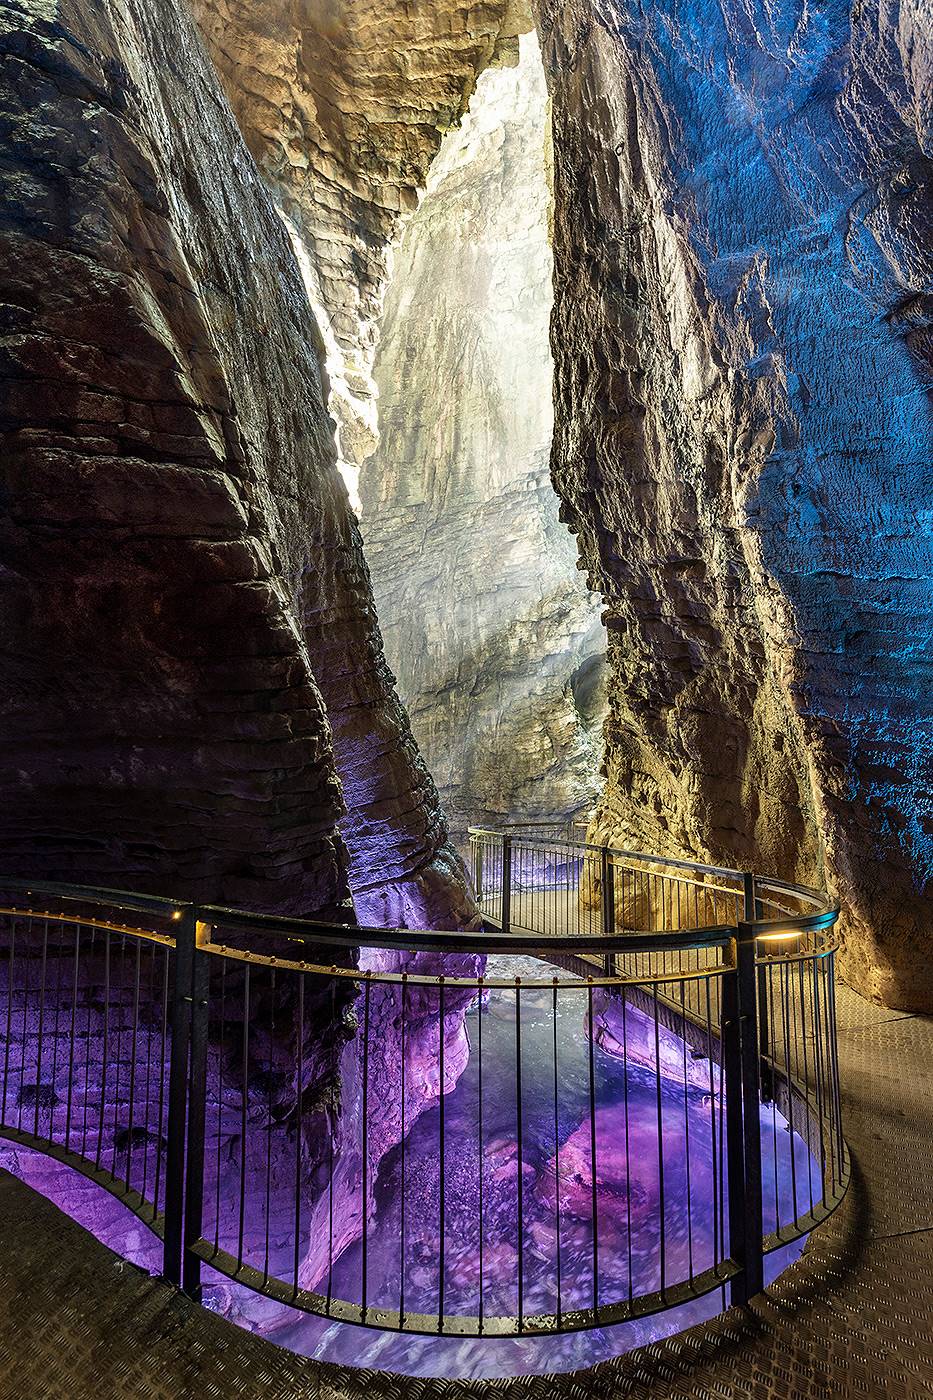 Baitone Alpino empfehlt: Parco Grotta cascate del Varone